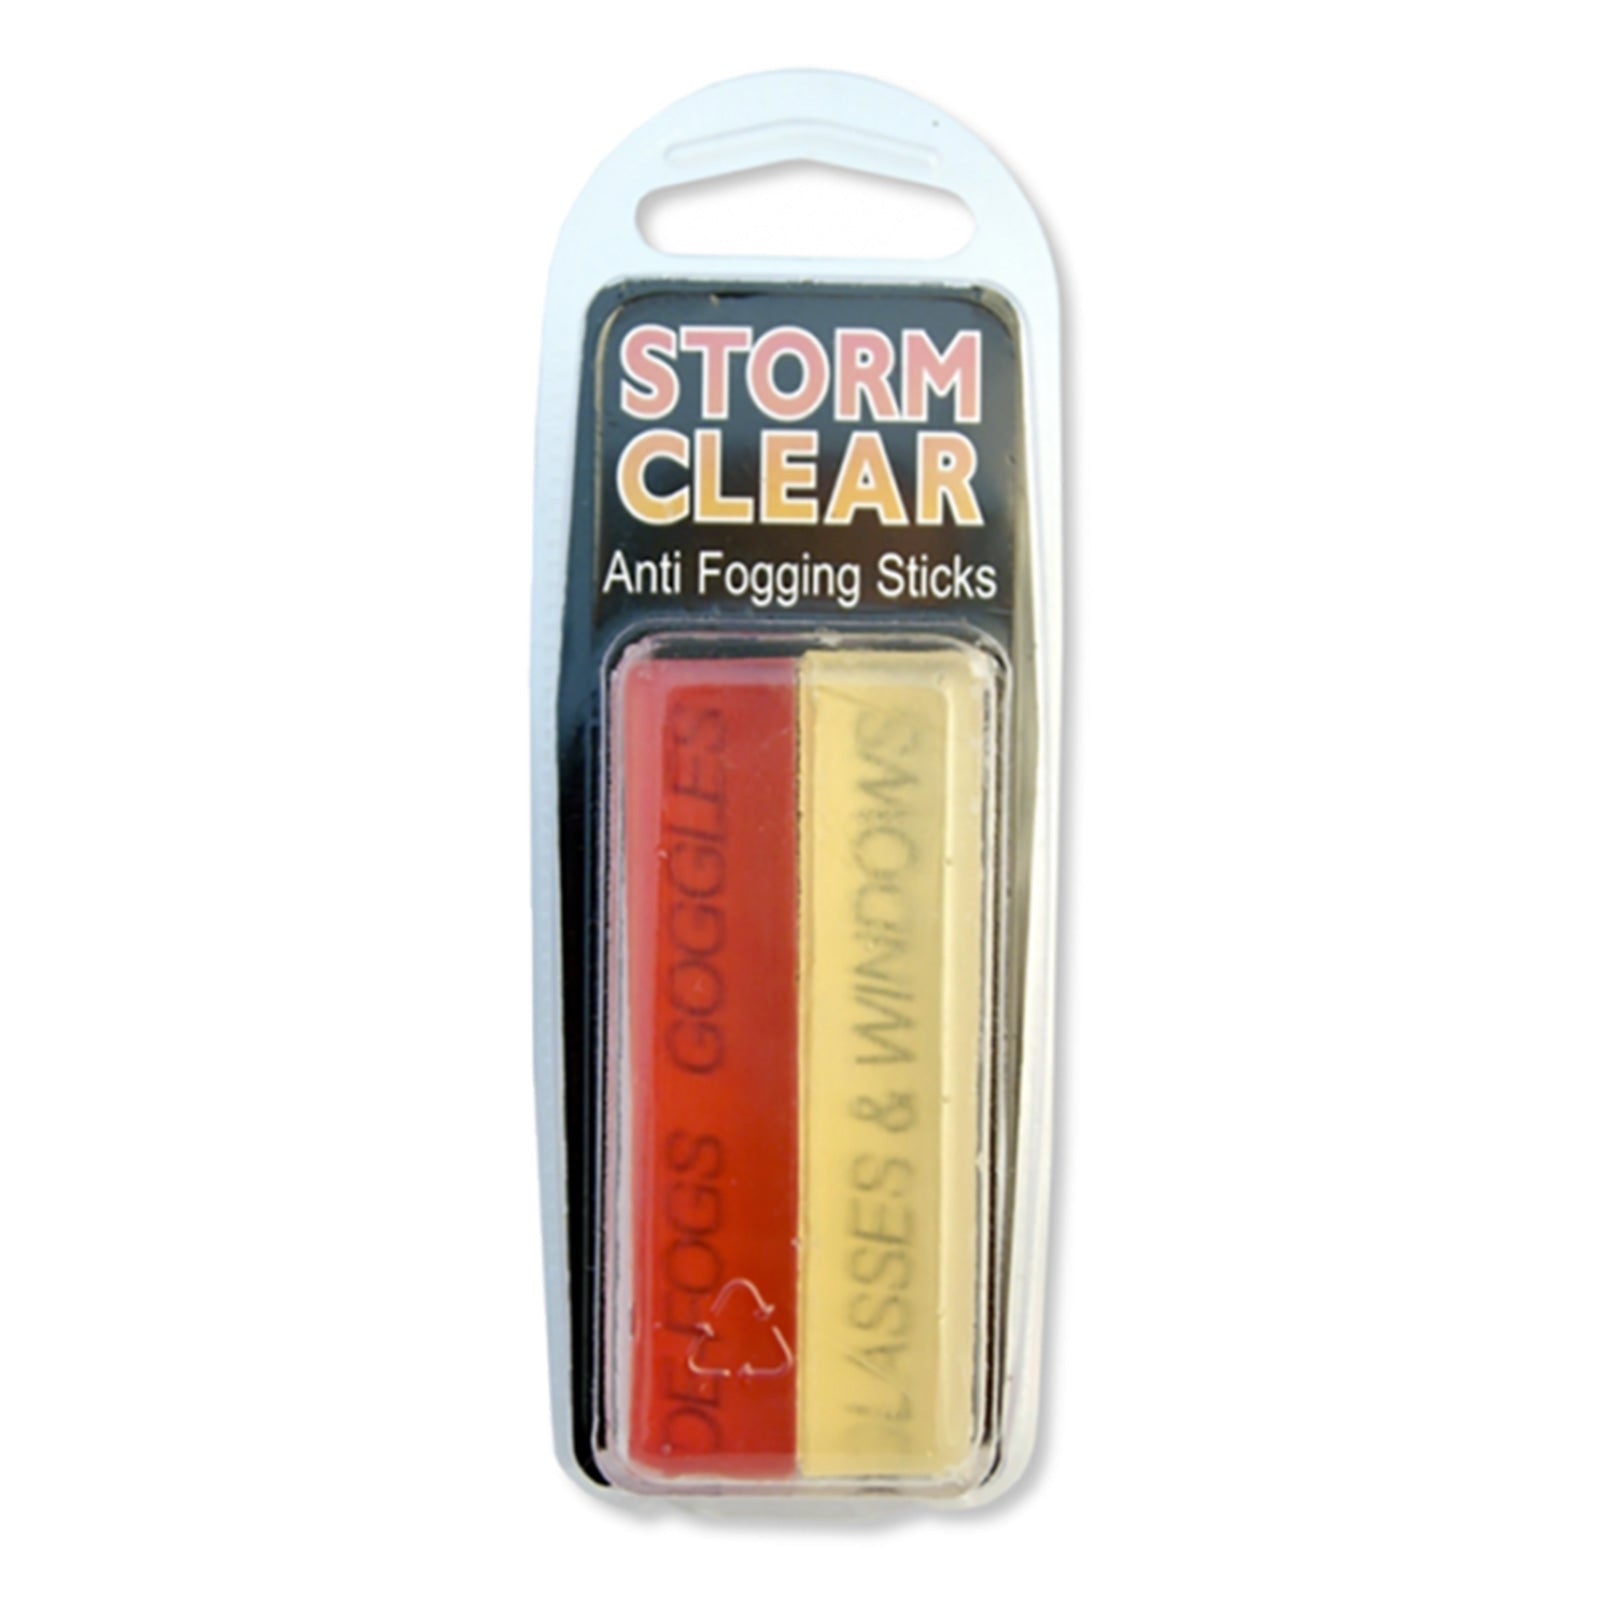 Storm Clear Anti Fogging Sticks